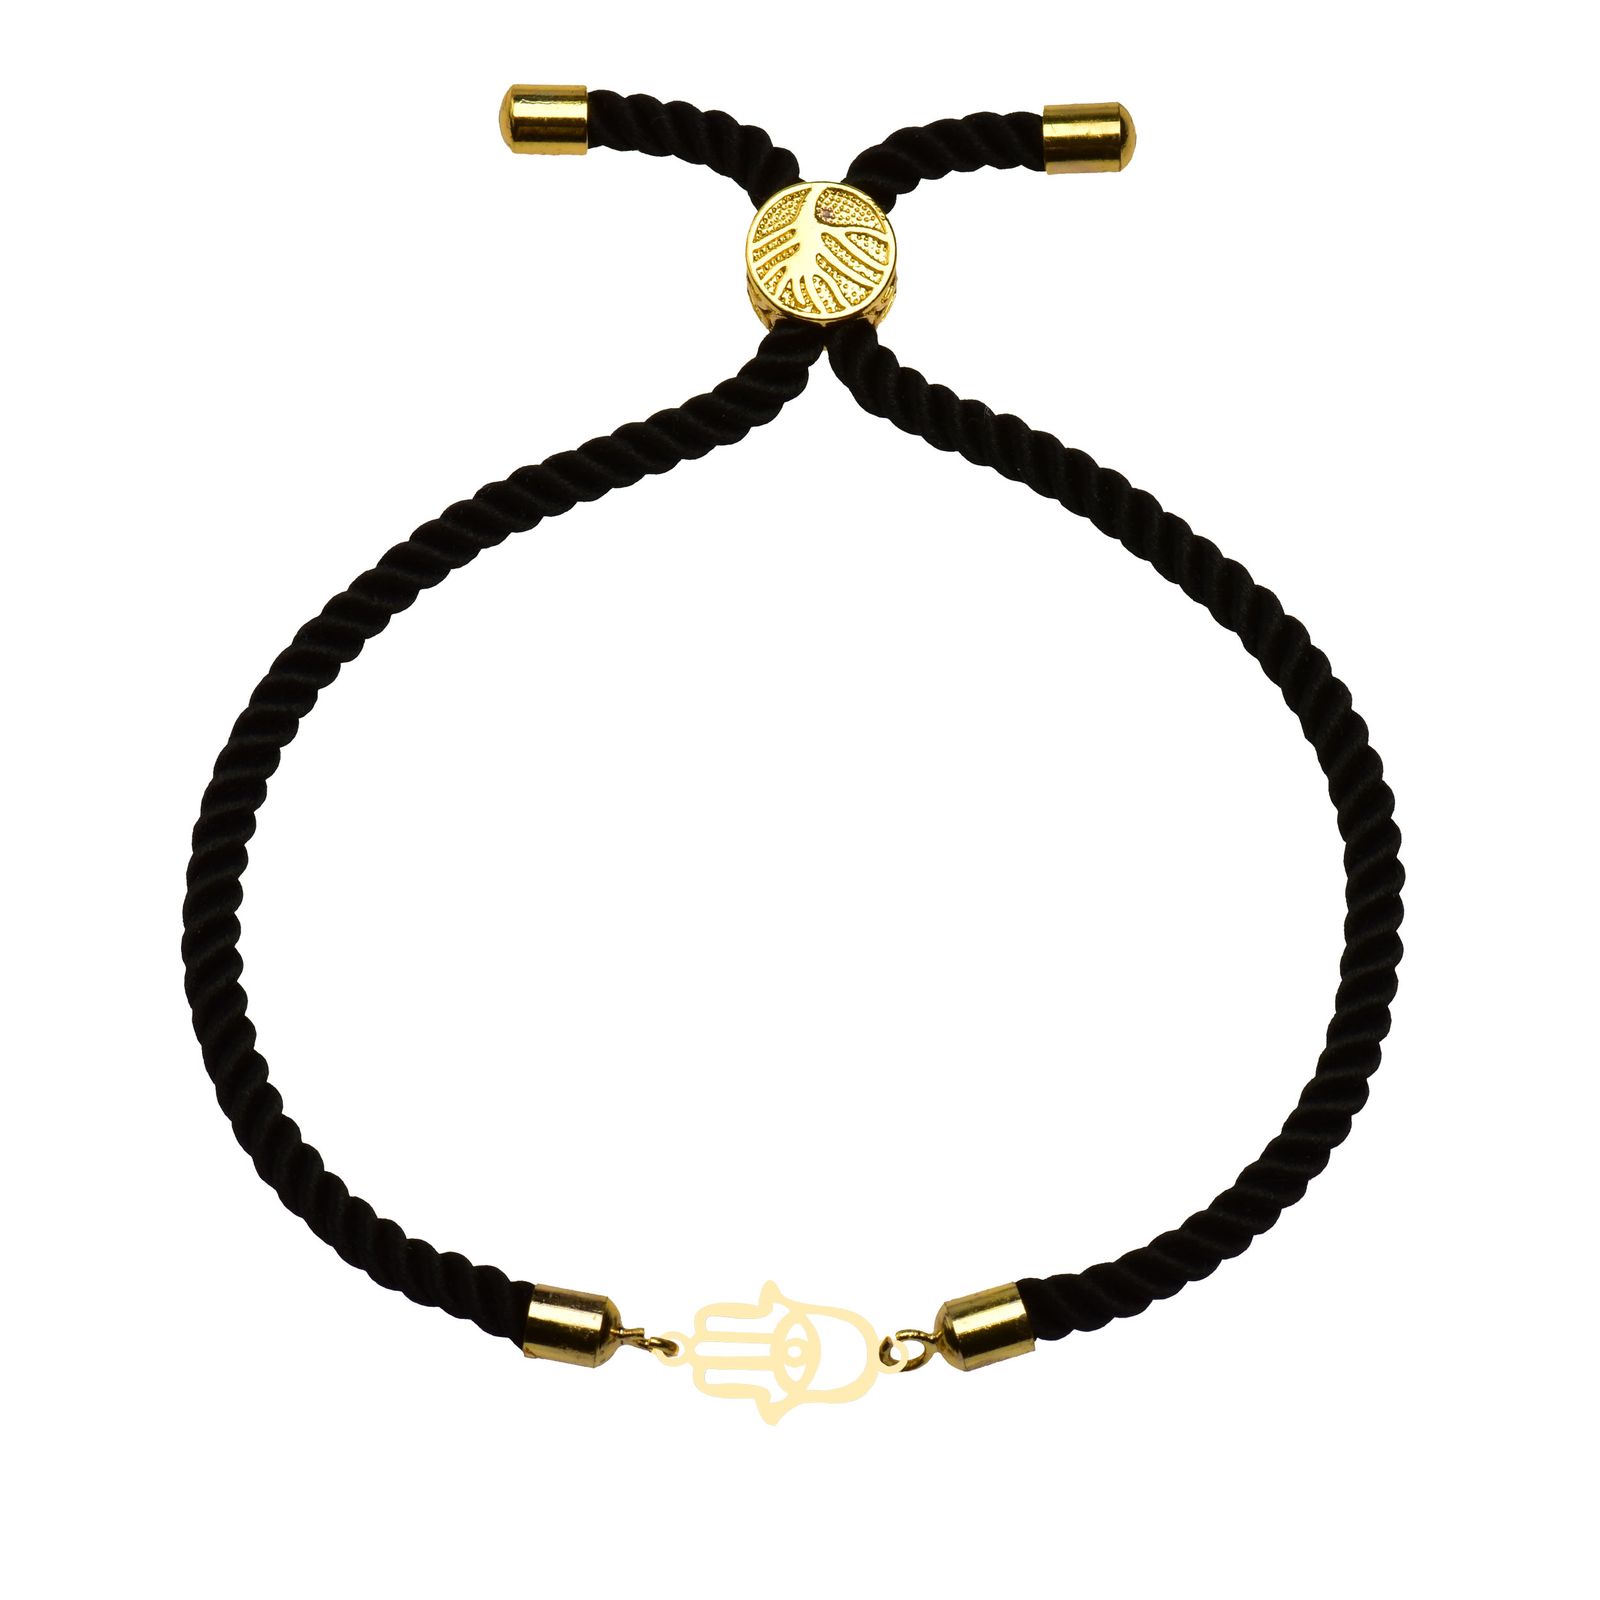 دستبند طلا 18 عیار زنانه کرابو طرح دست همسا مدل Kr102235 -  - 2